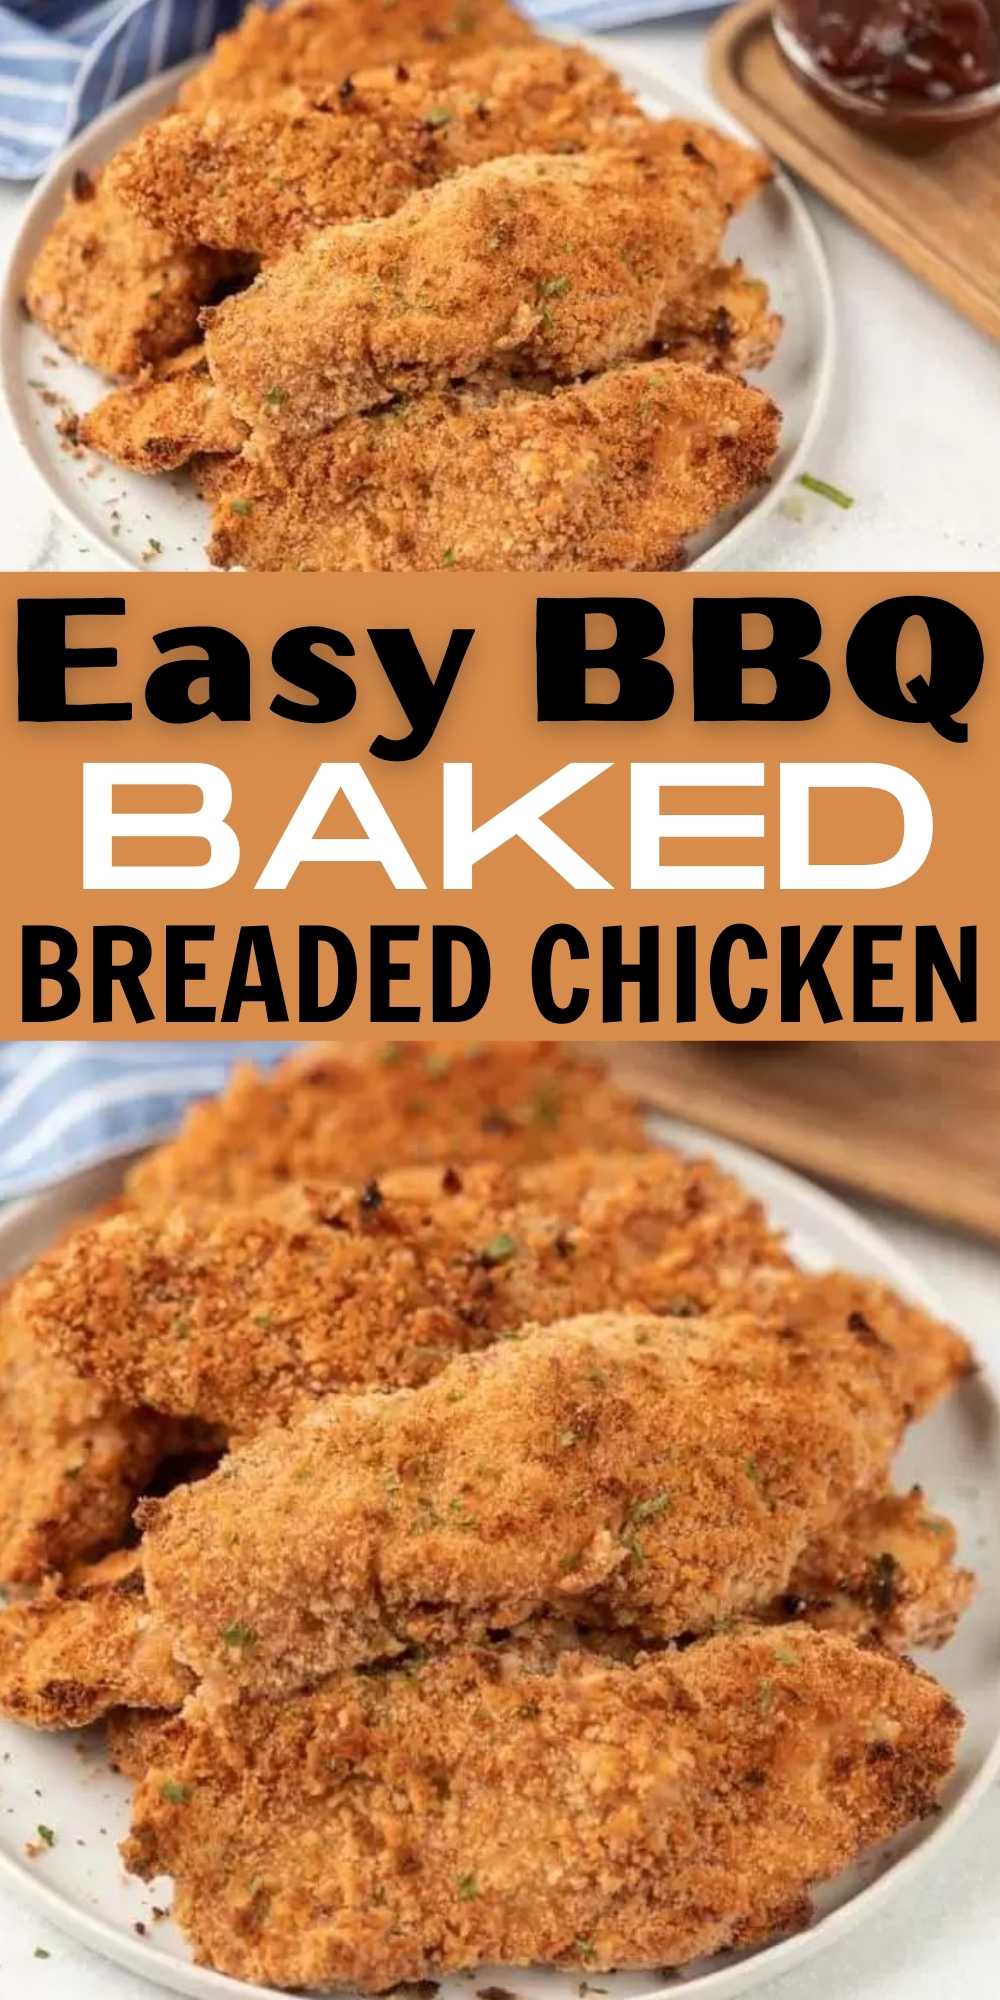 Oven baked breaded chicken - Baked Breaded Chicken Breast